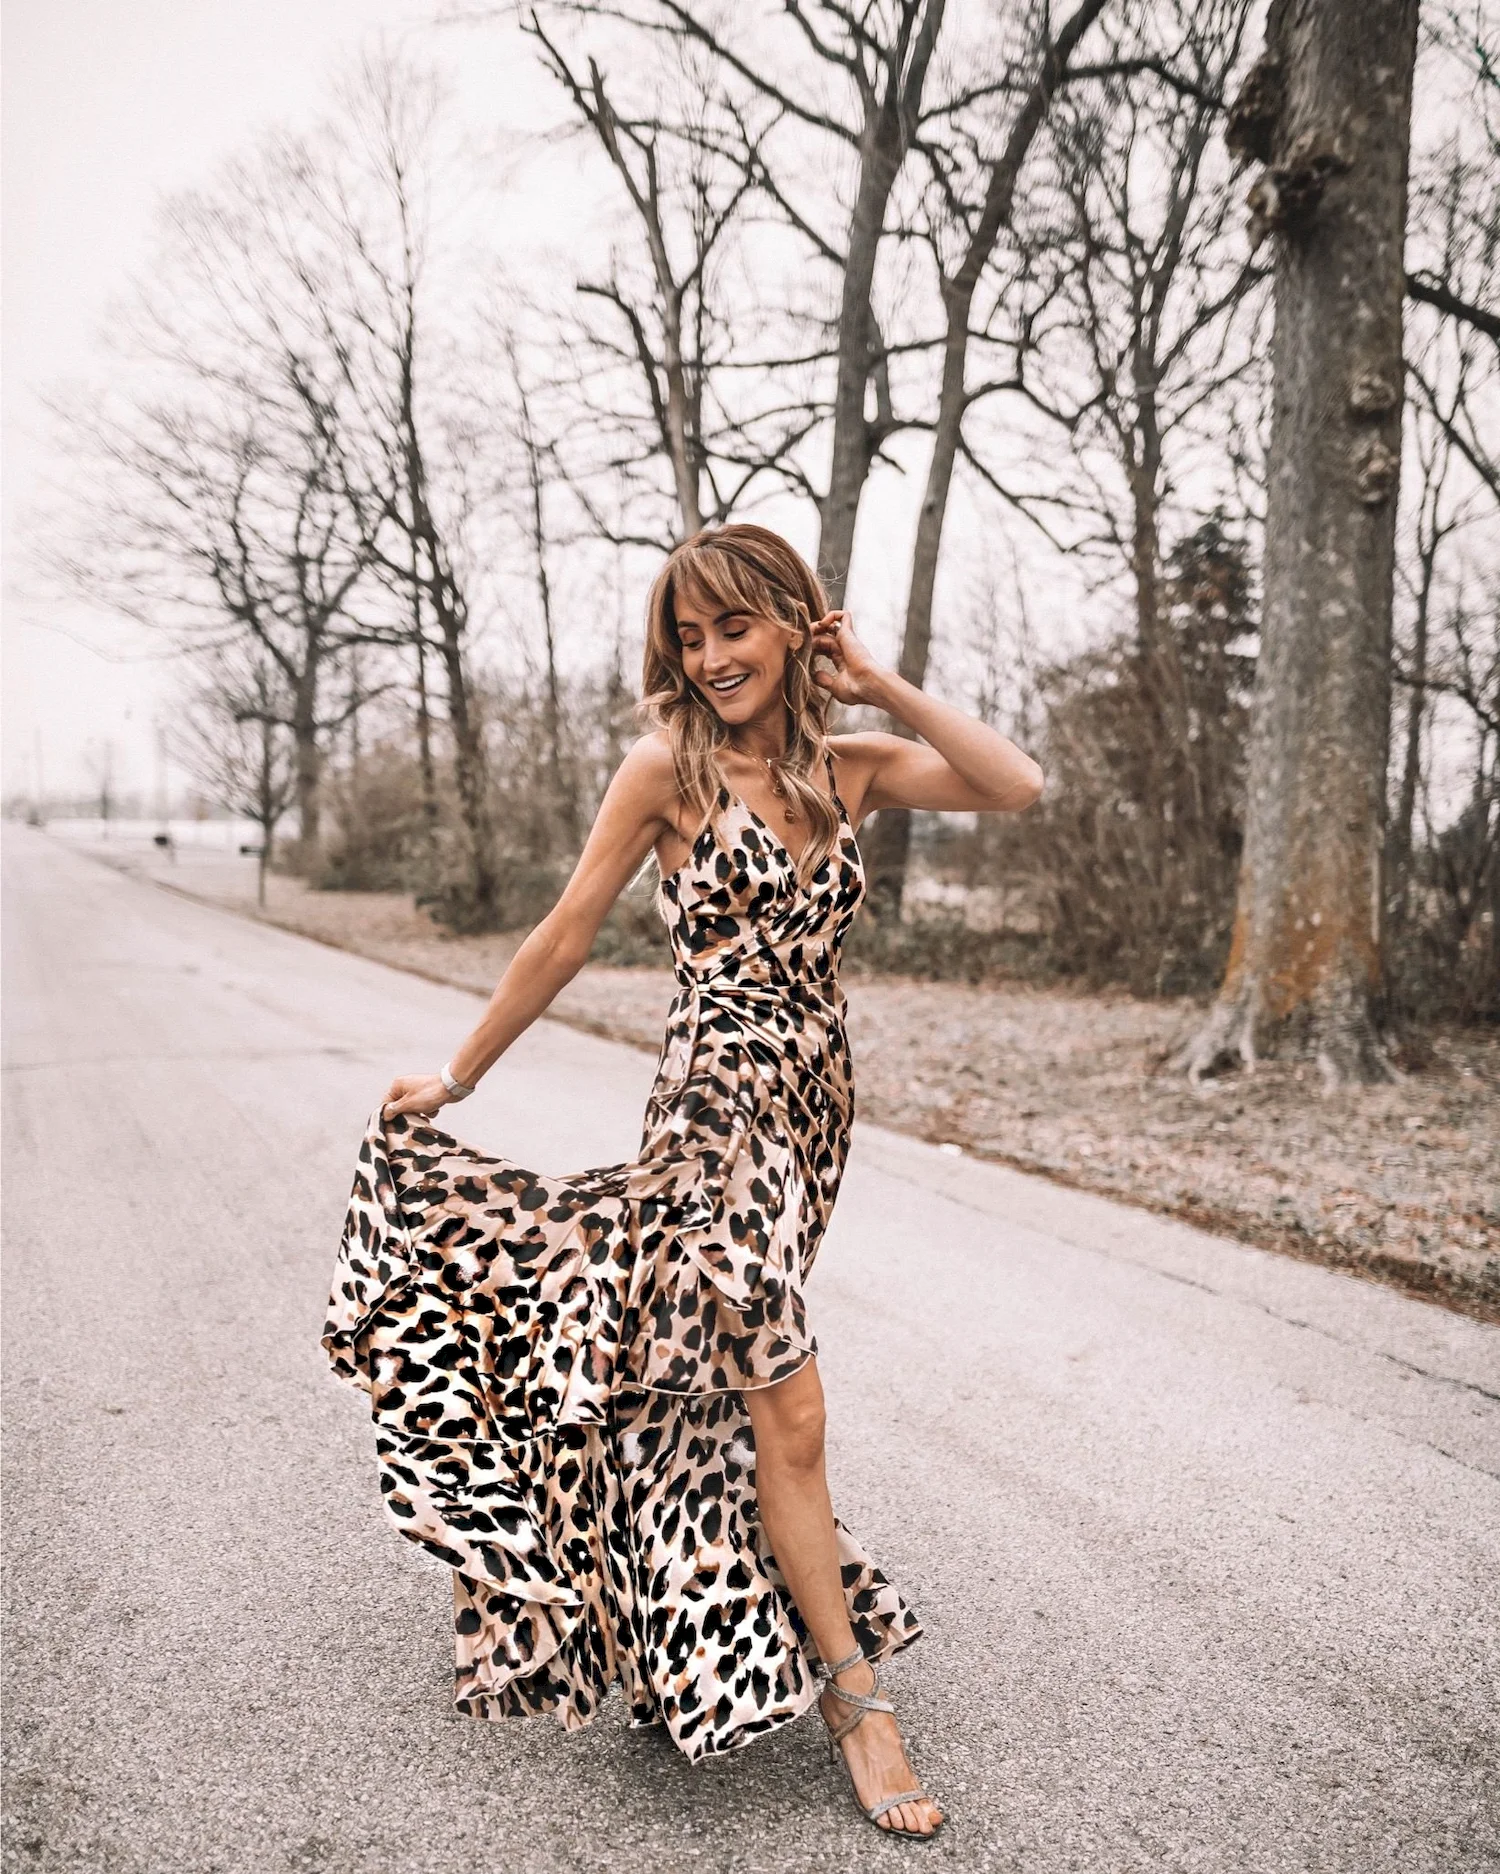 Фотосессия в леопардовом платье на природе